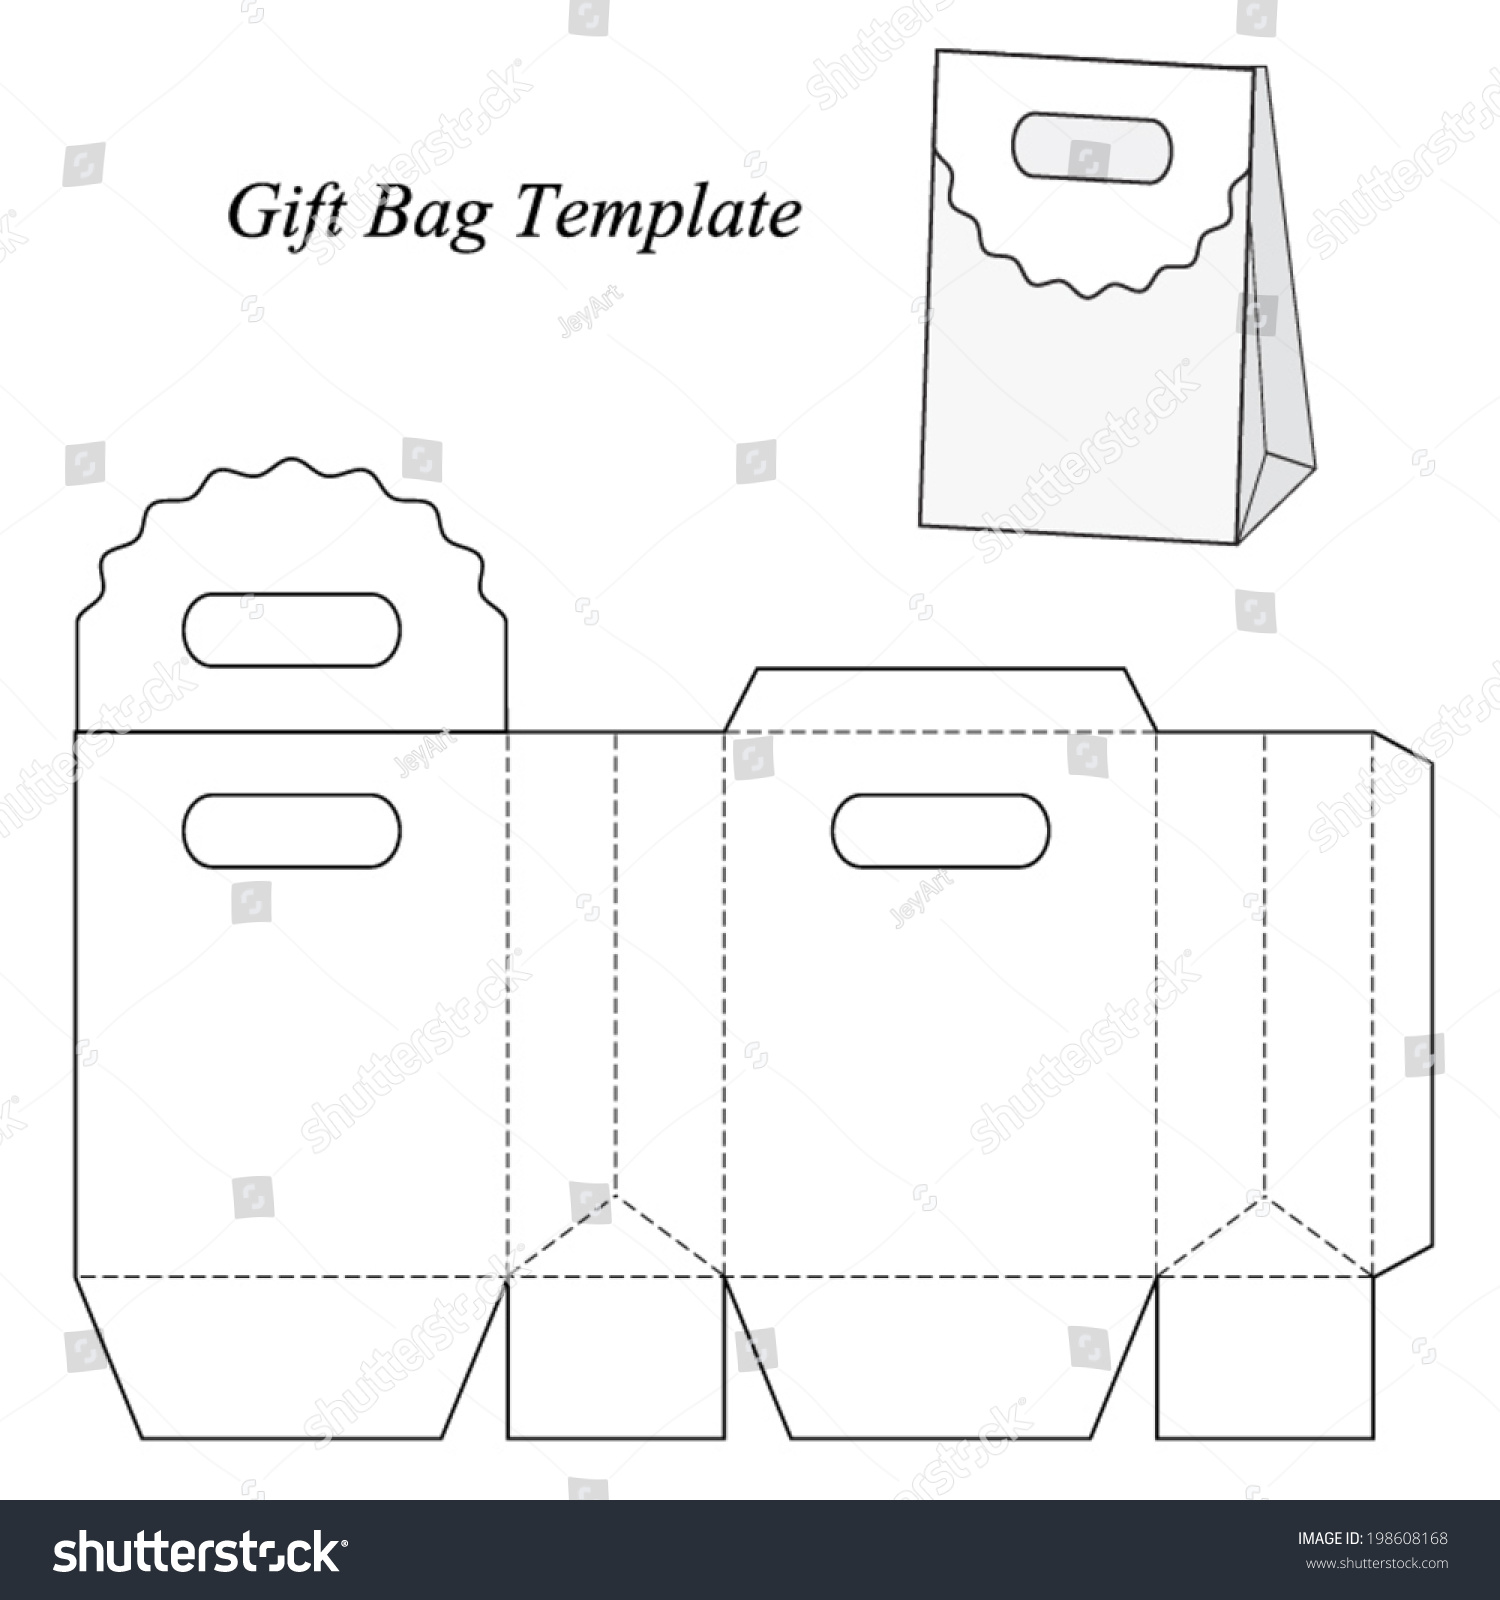 Gift Bag Template Vector Illustration Stock Vector 198608168 - Shutterstock